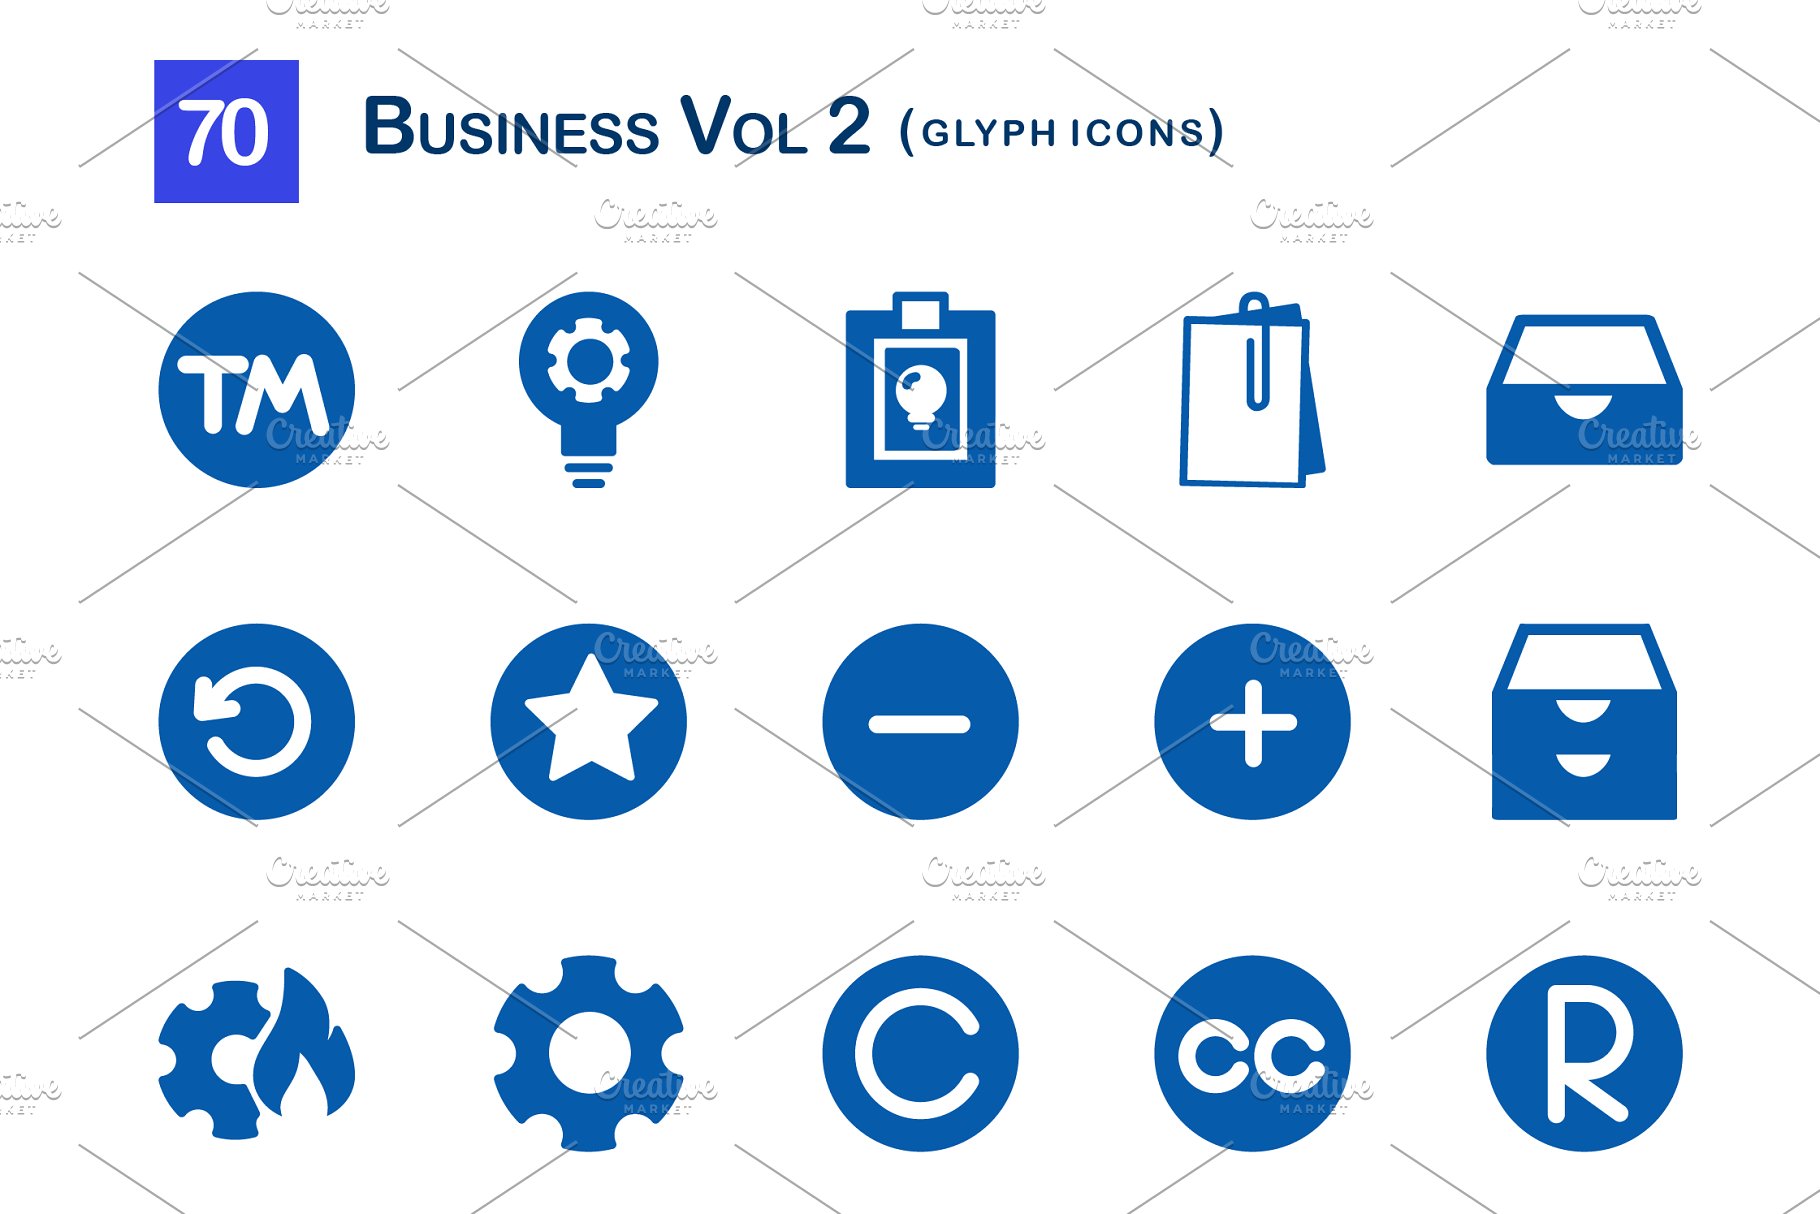 商业创意图标 70 Business Vol 2 Glyph